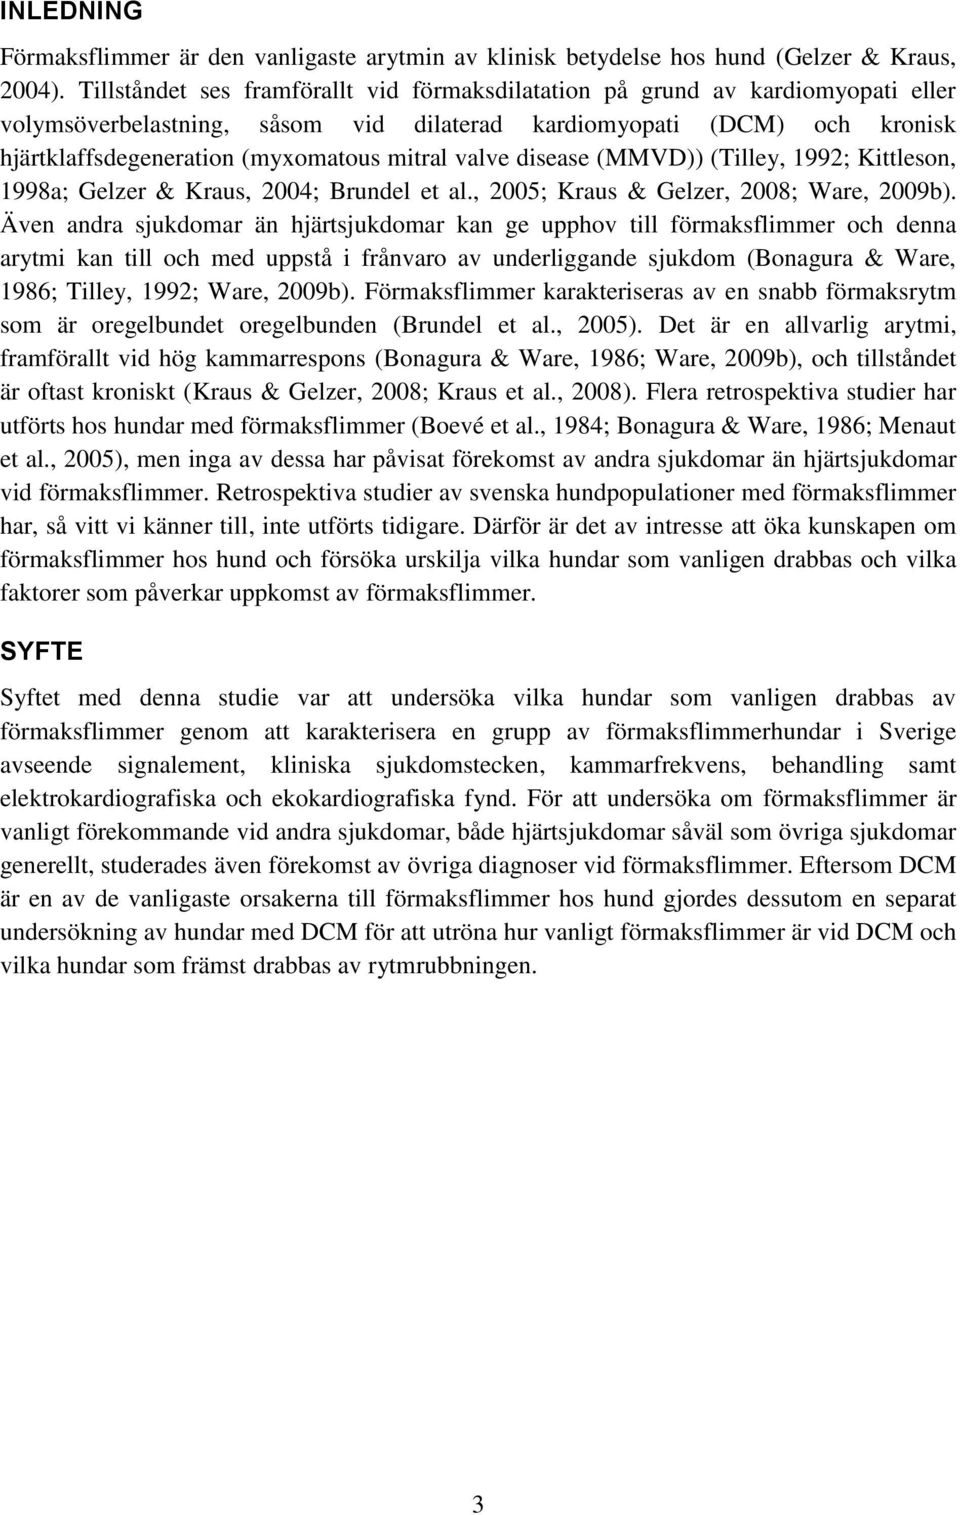 valve disease (MMVD)) (Tilley, 1992; Kittleson, 1998a; Gelzer & Kraus, 2004; Brundel et al., 2005; Kraus & Gelzer, 2008; Ware, 2009b).